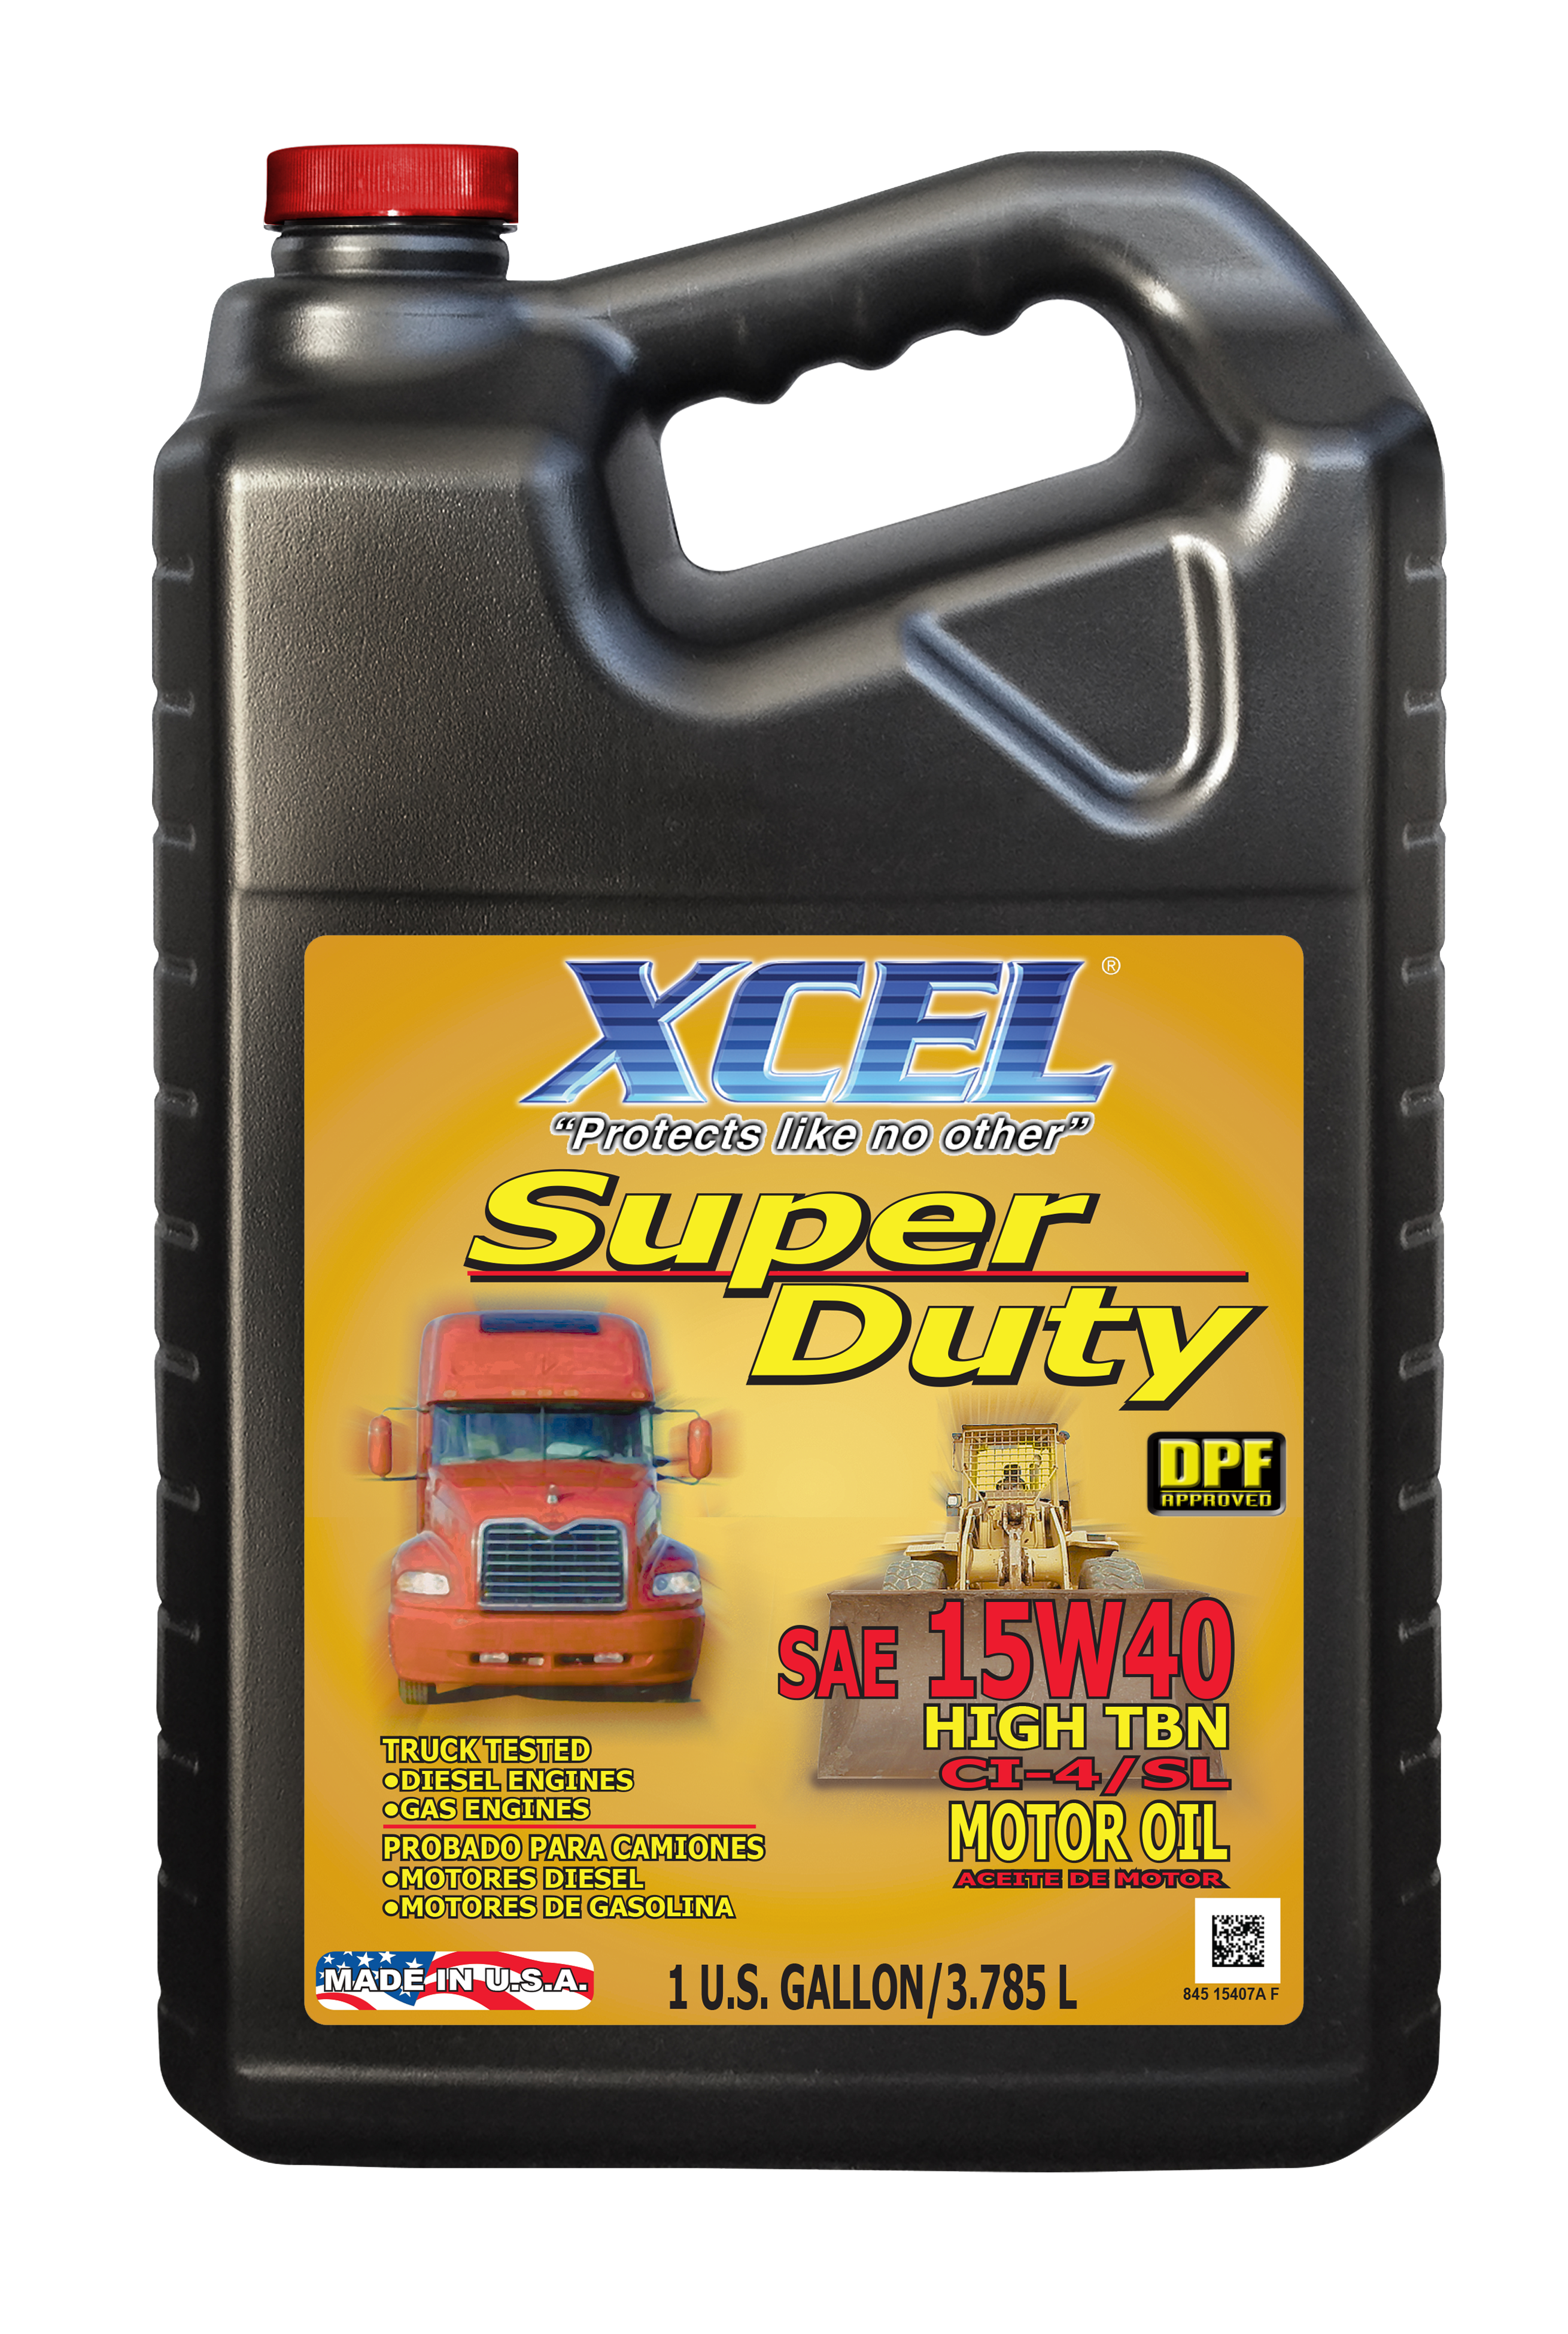 XCEL SUPER DUTY MOTOR OIL SAE 15W40